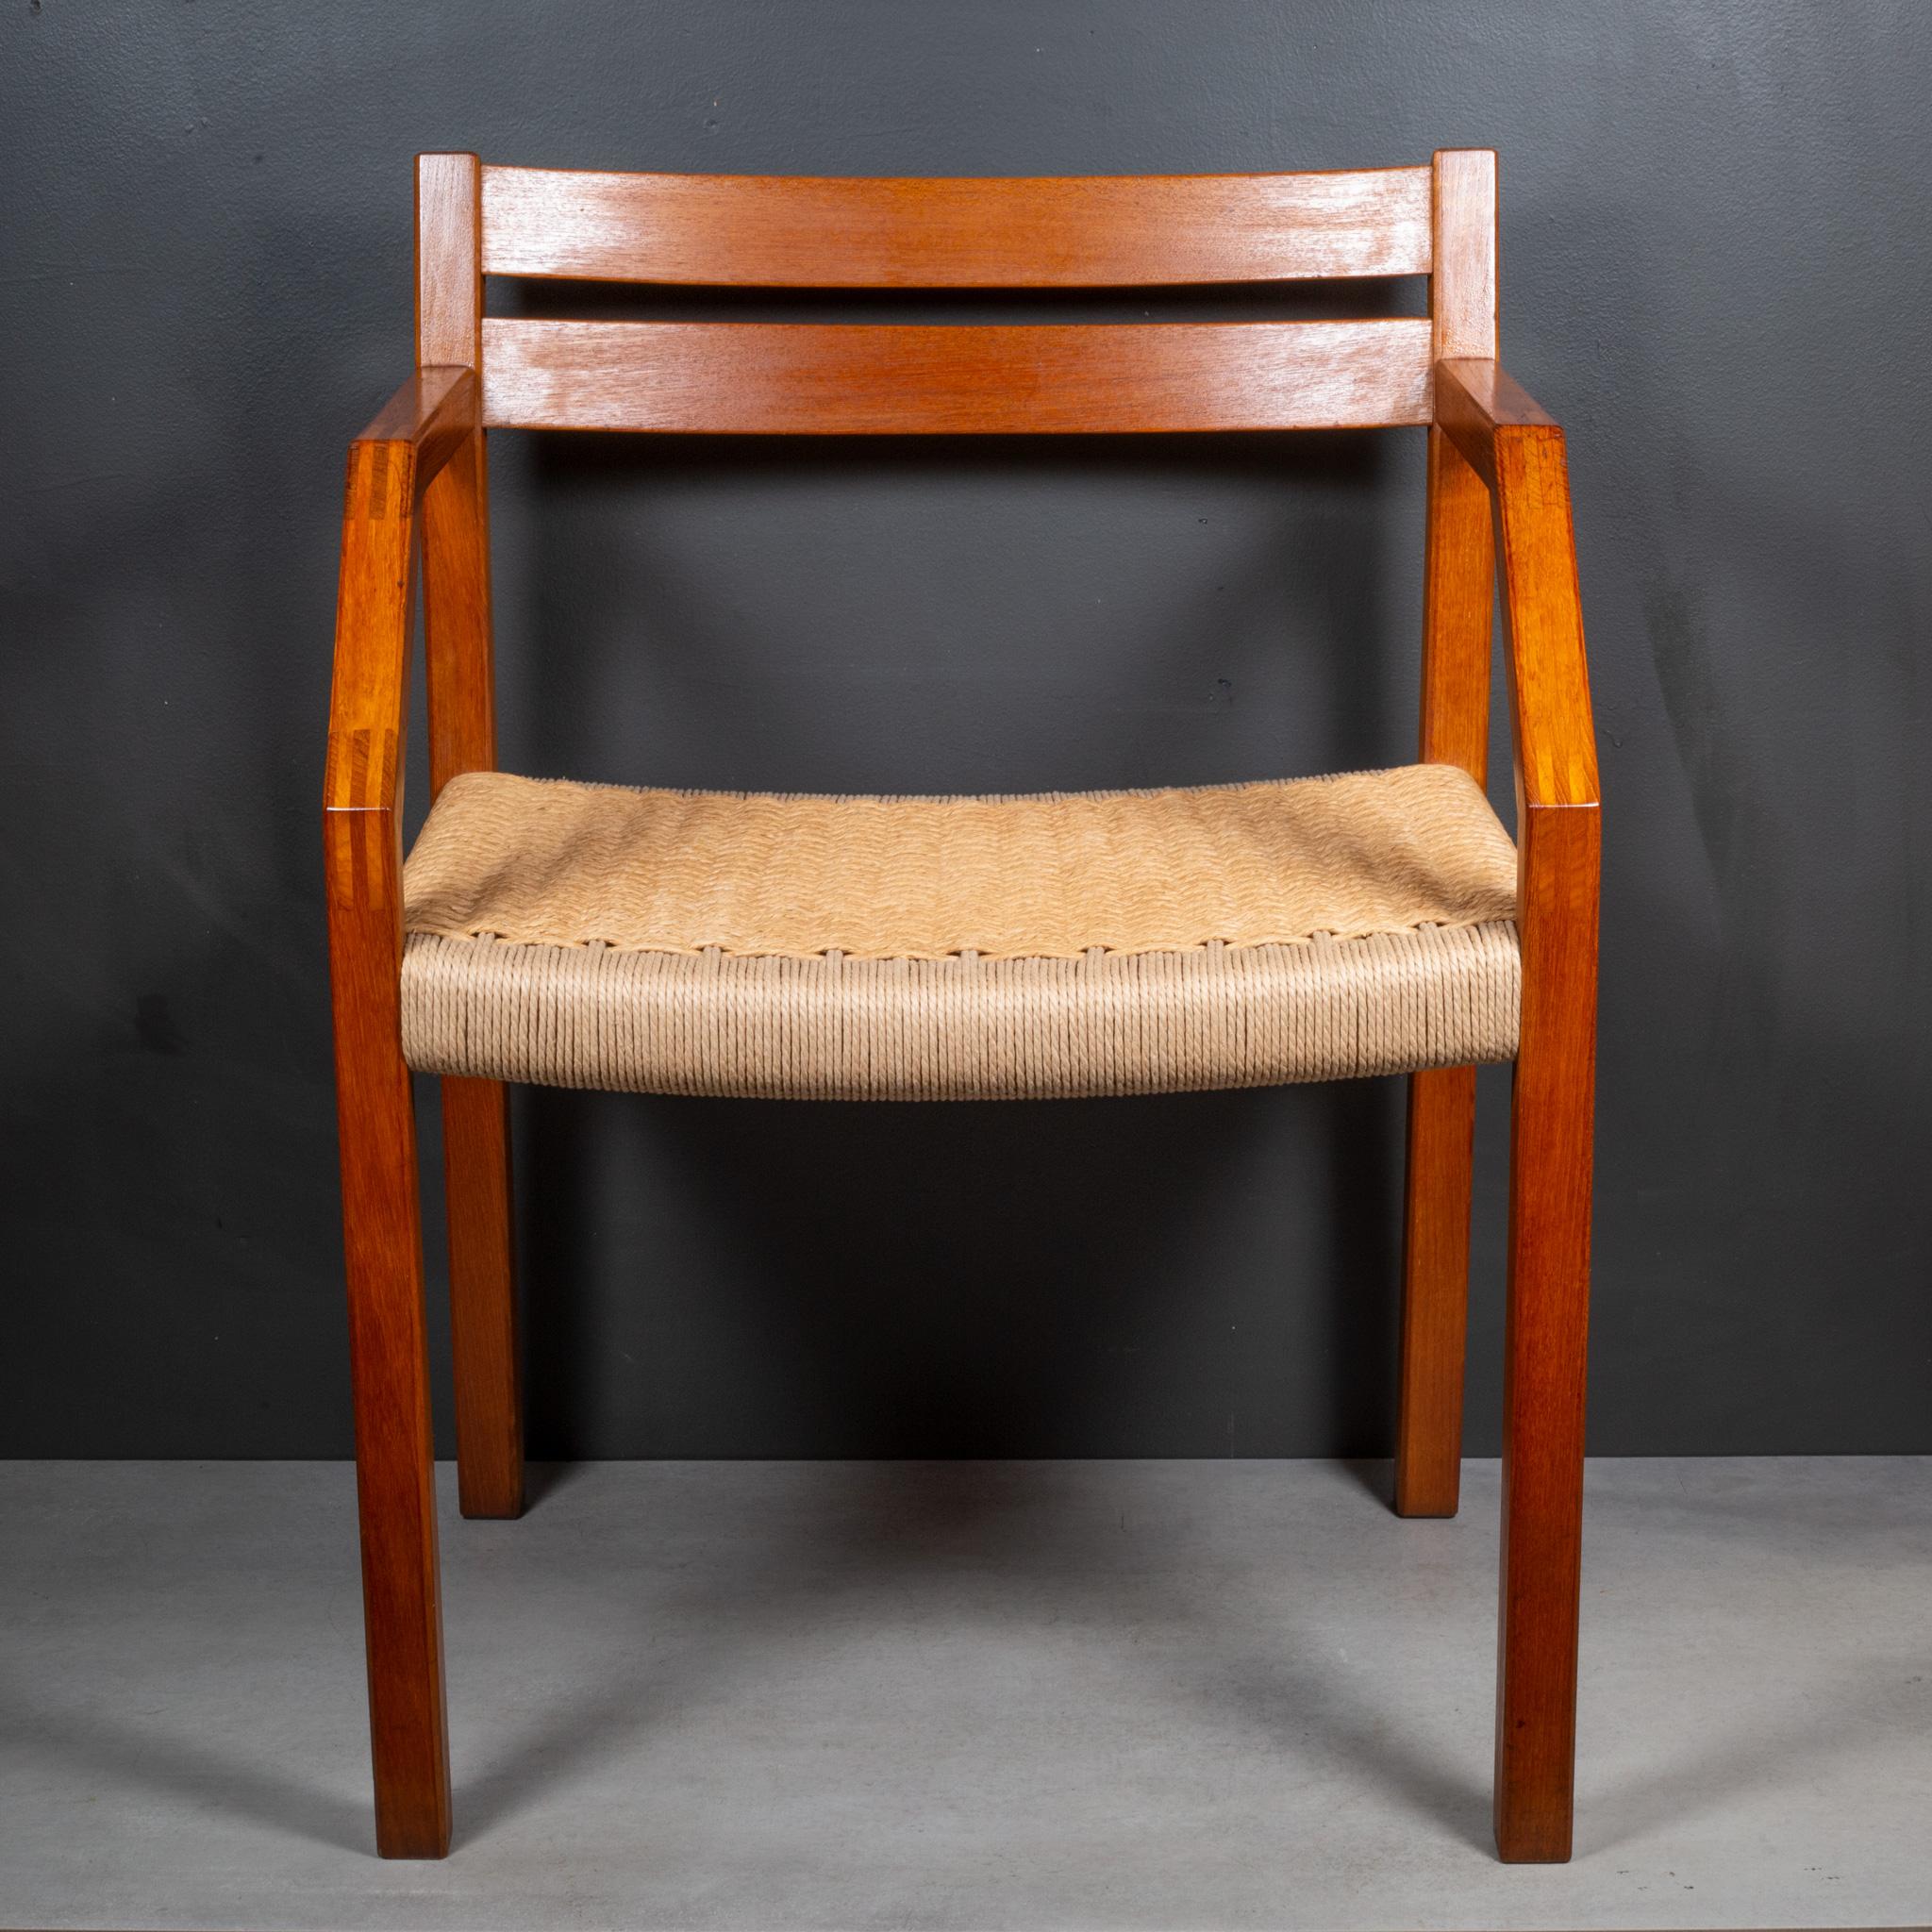 ÜBER

Kann separat verkauft werden. Der Preis gilt pro Stuhl.

Ein Paar der seltenen J.L. Moller Modell #404 Ess-/Schreibtischsessel, entworfen 1974 von Jorgen Henrik Moller für J.L. Moller Mobelfabrik aus Dänemark. Die Stühle sind aus massivem